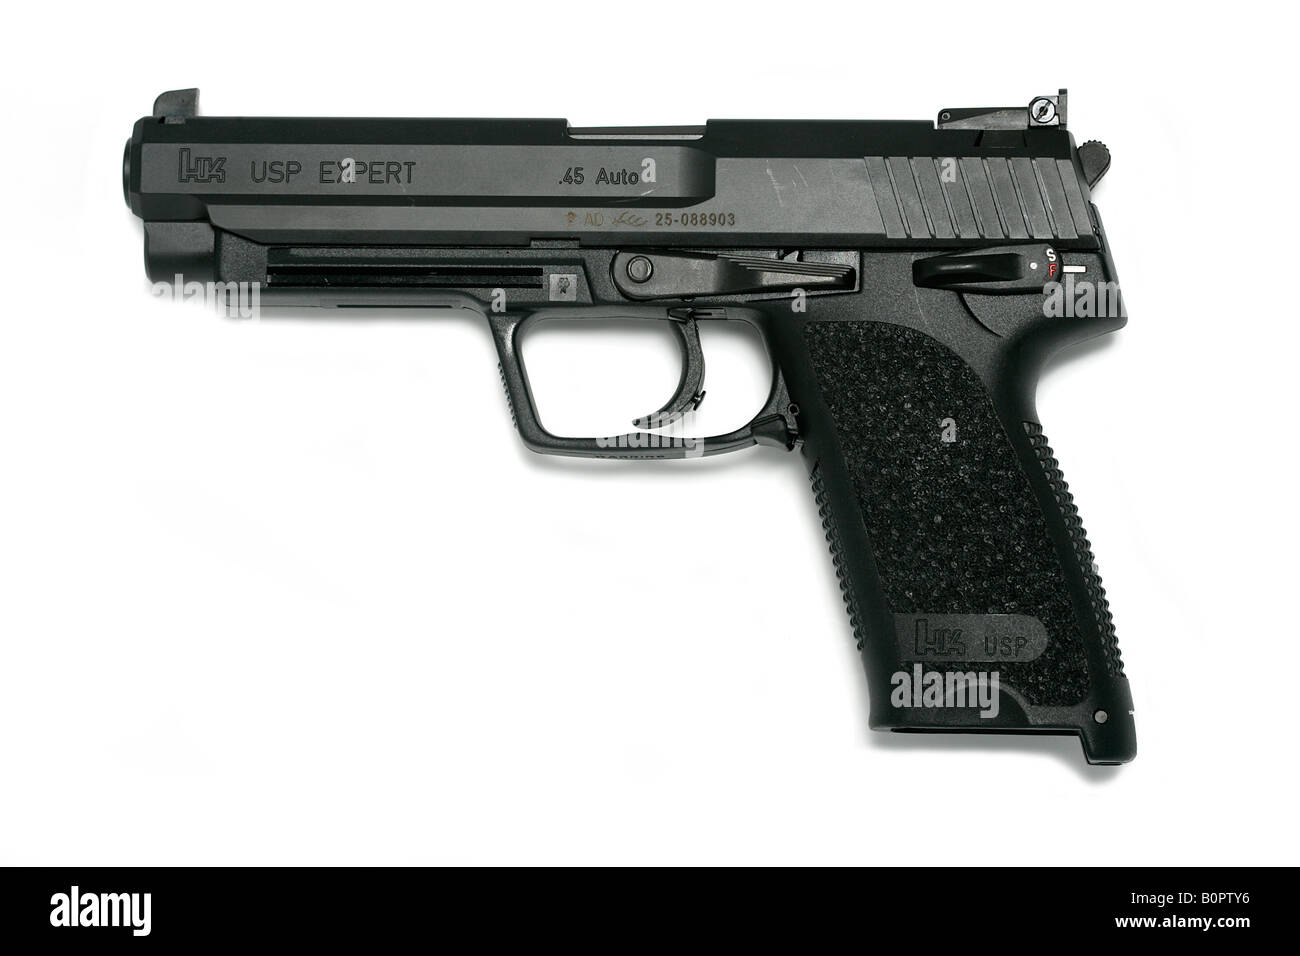 HK USP Expert 45 handgun hand gun pistol Stock Photo